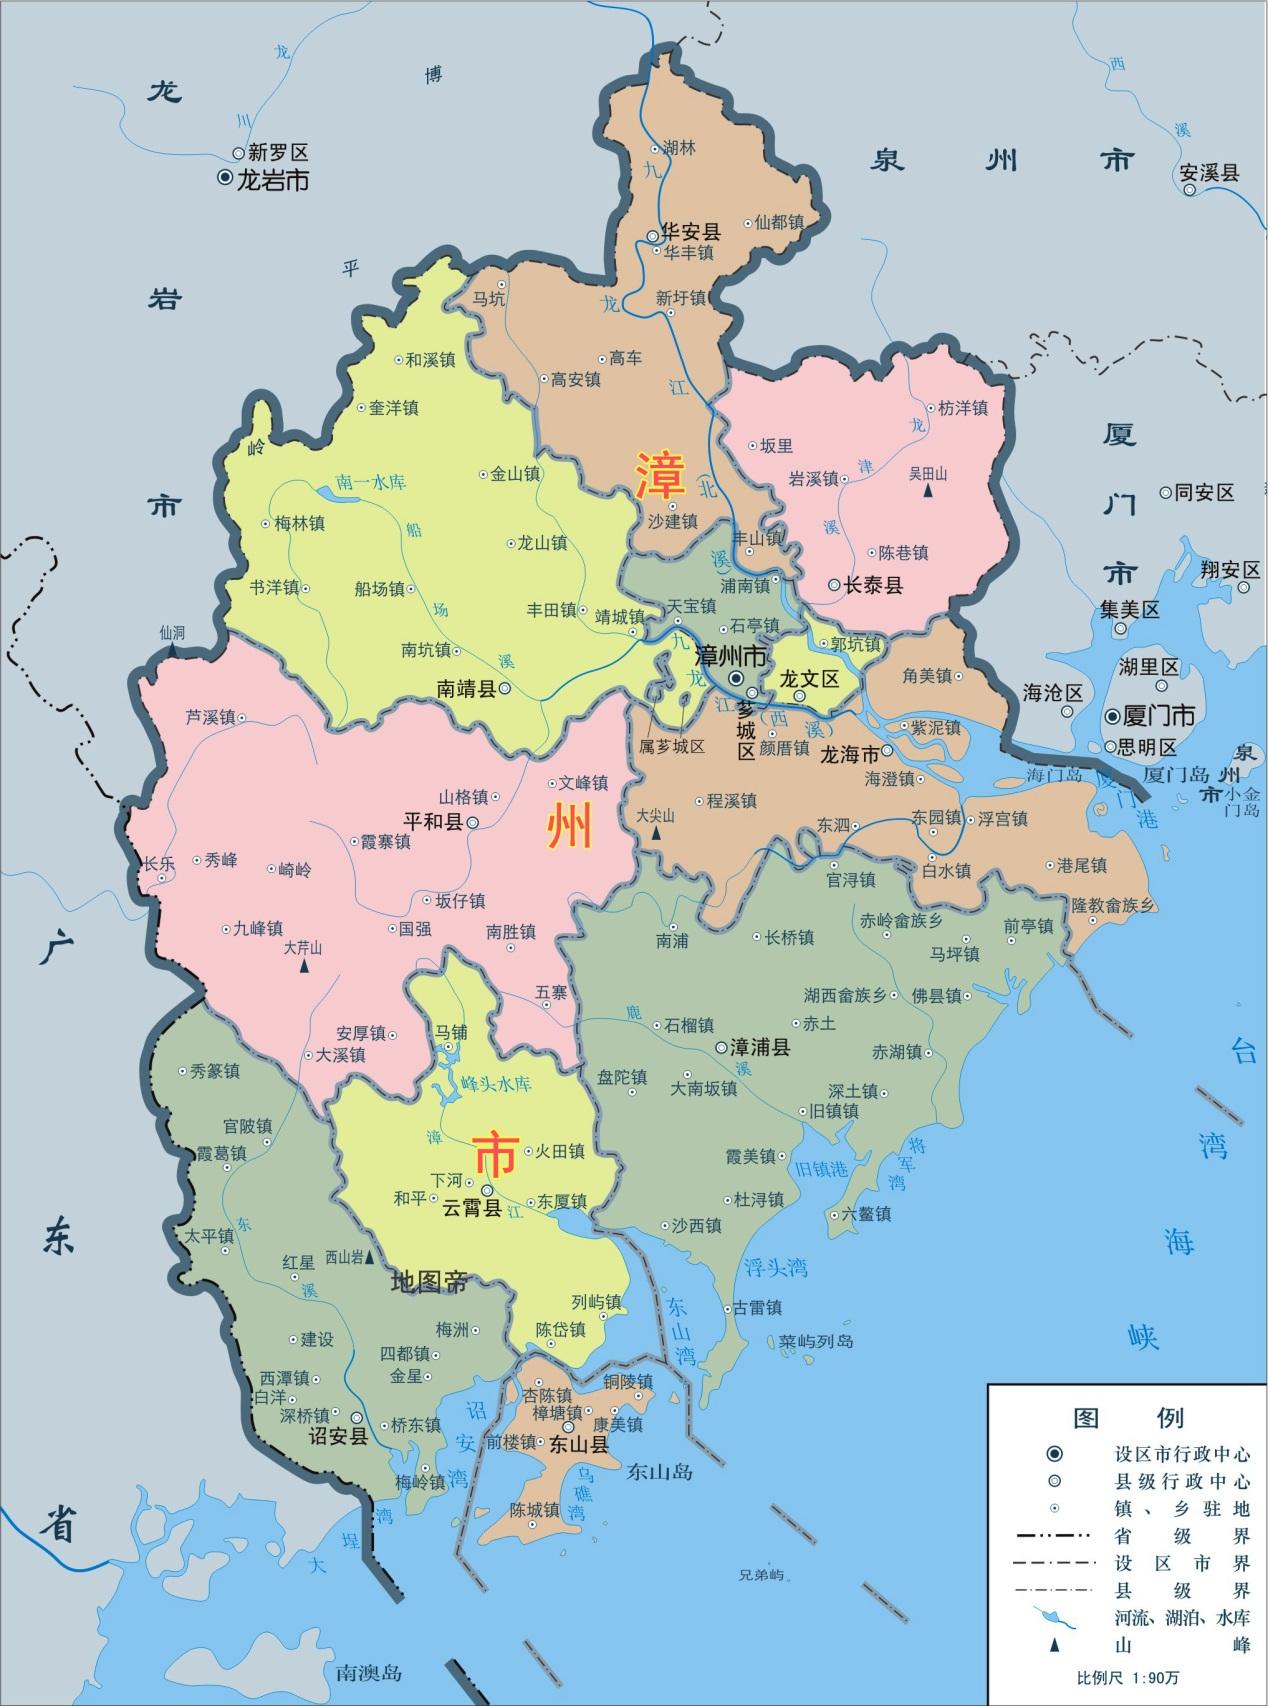 福建漳州芗城区有两块飞地,在南靖县境内,形状像龙图片